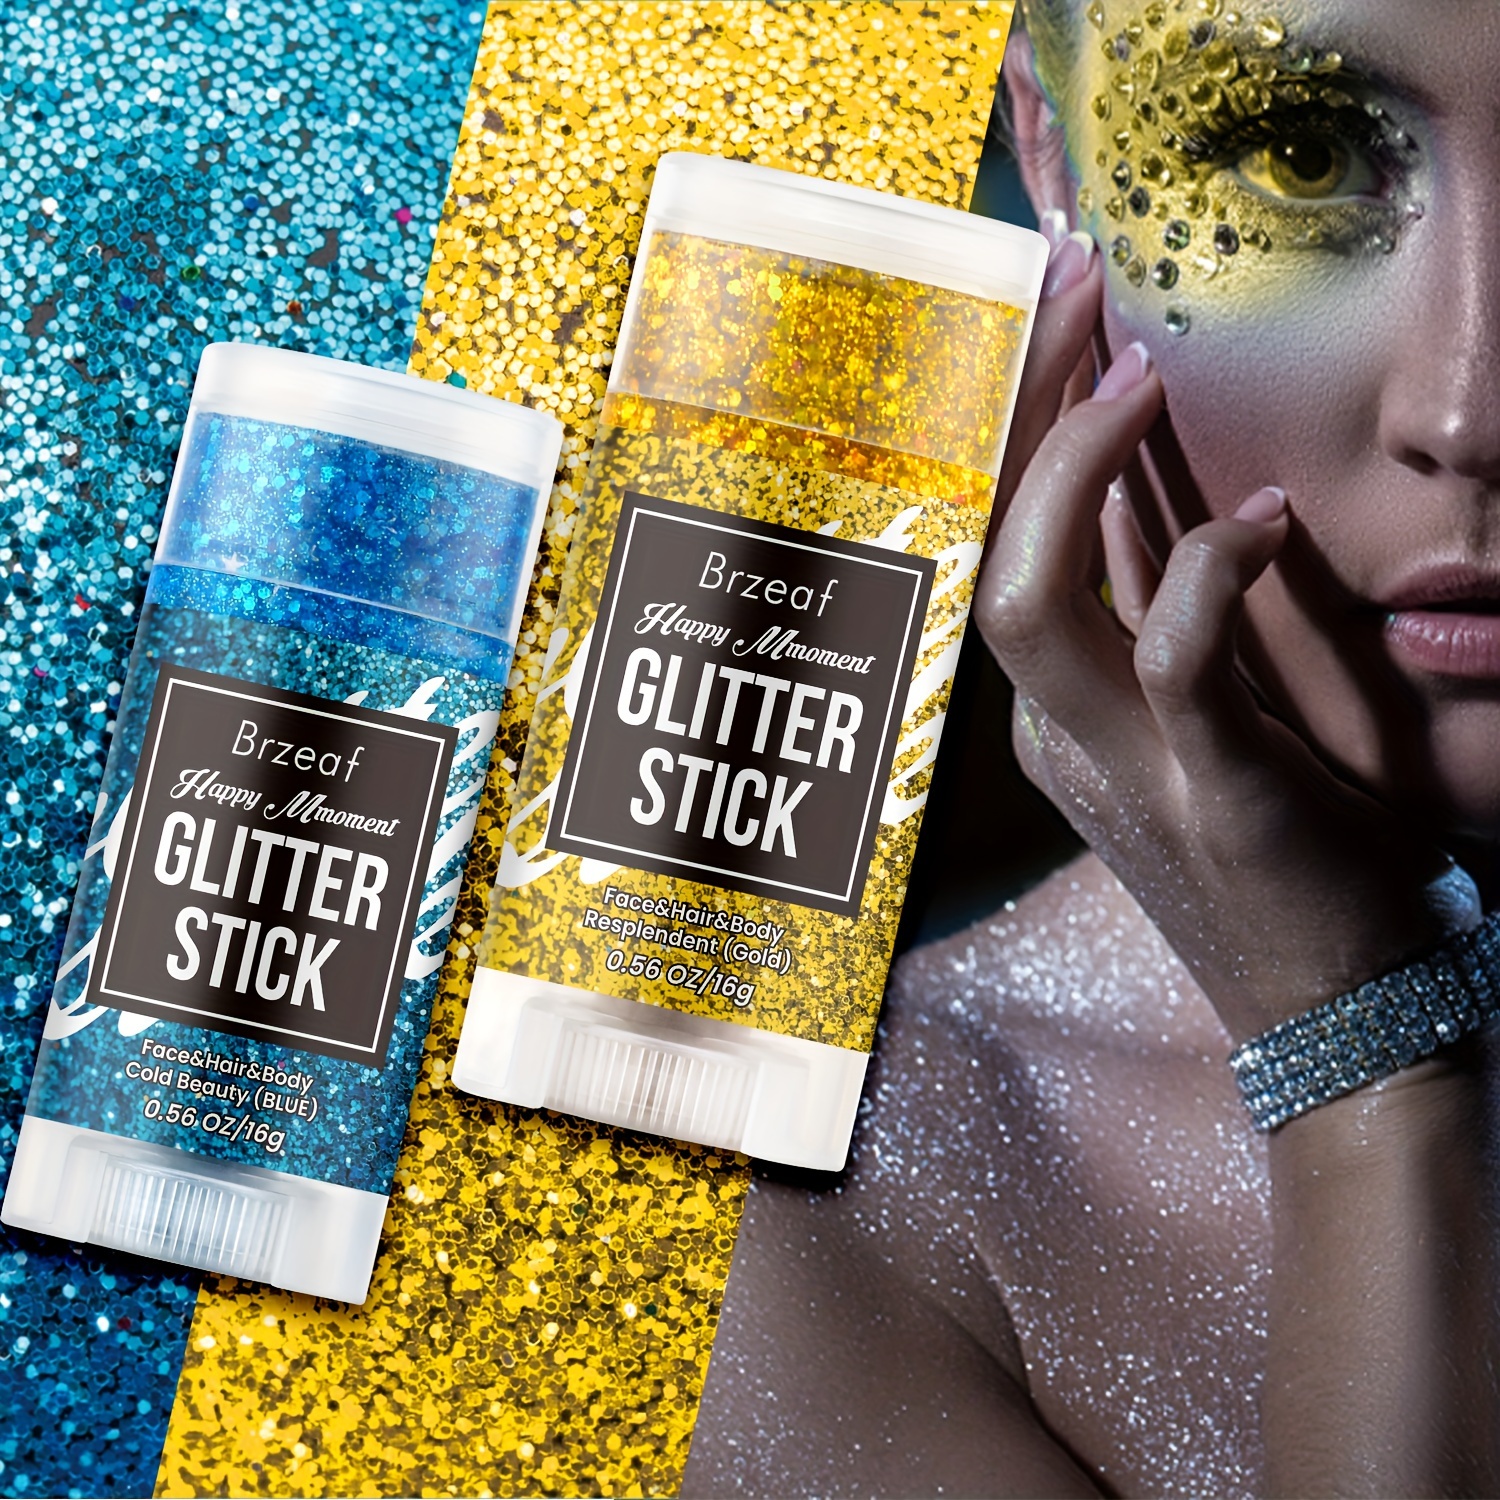 Body Glitter Laser Gel , Mermaid Scales Dance Stage Nightclub Makeup ,  Multi-color Makeup Sparkling Gel ( 9 Colors )